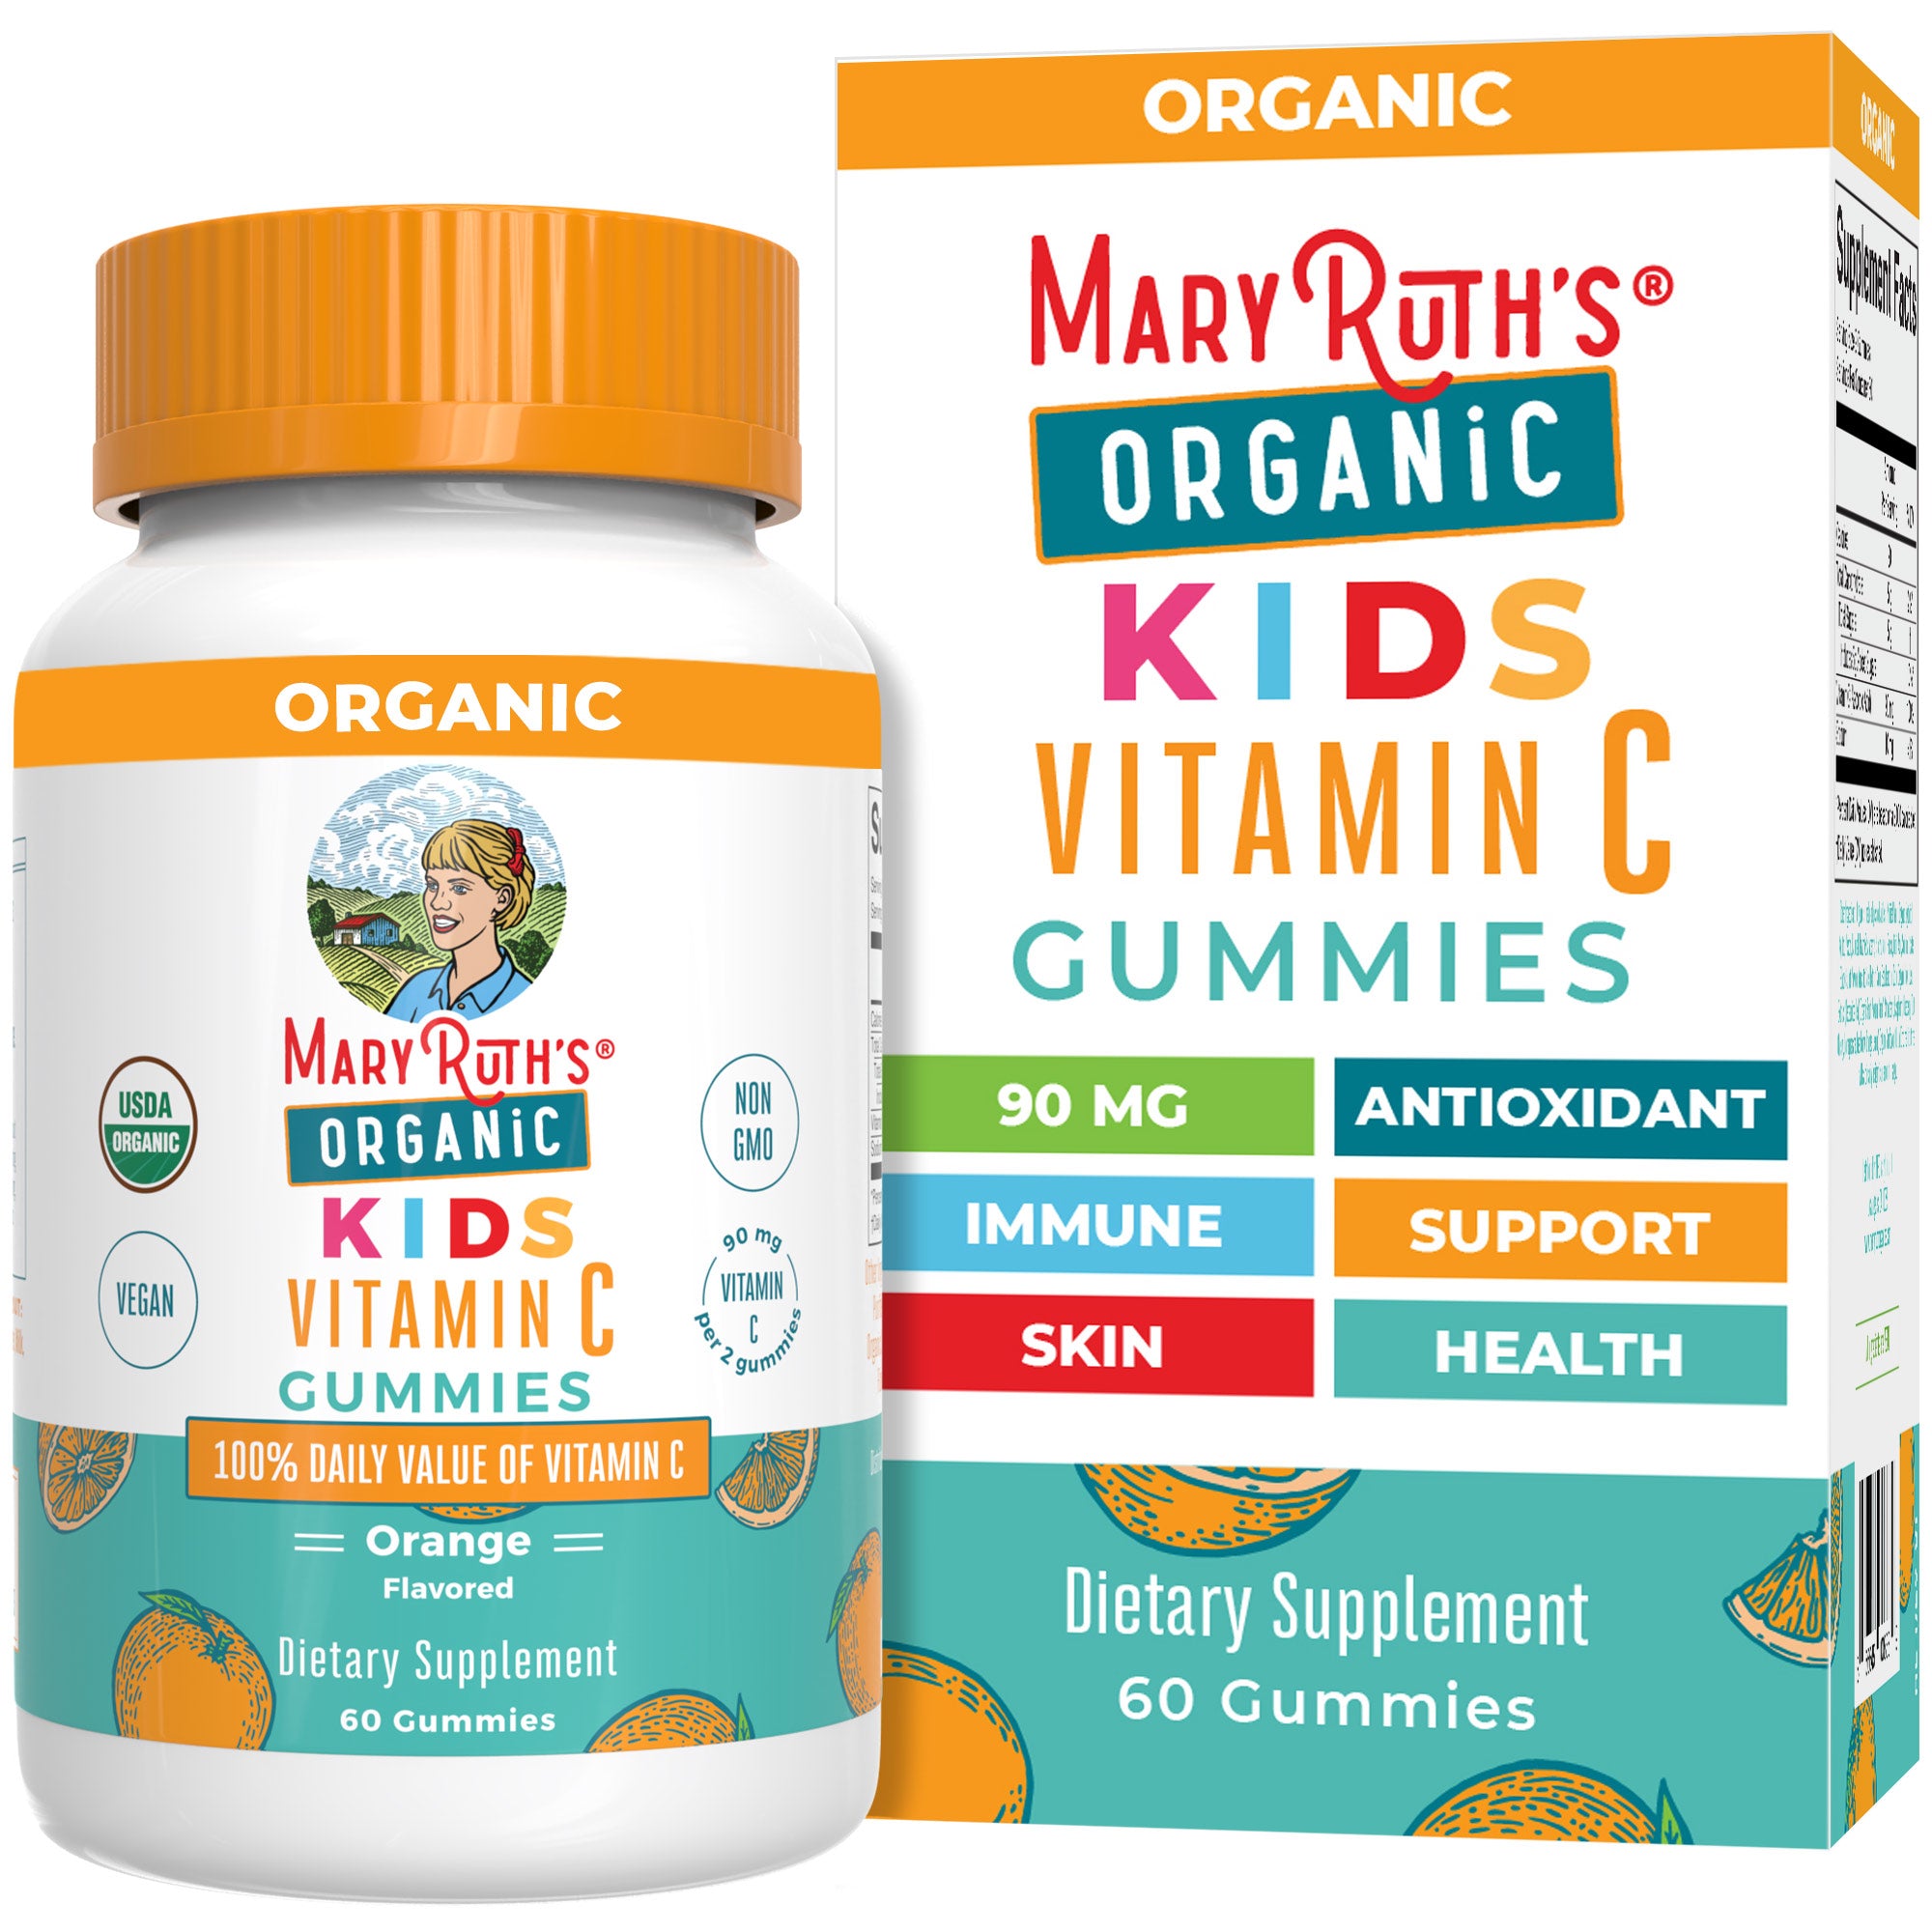 Organic Kids Vitamin C Gummies